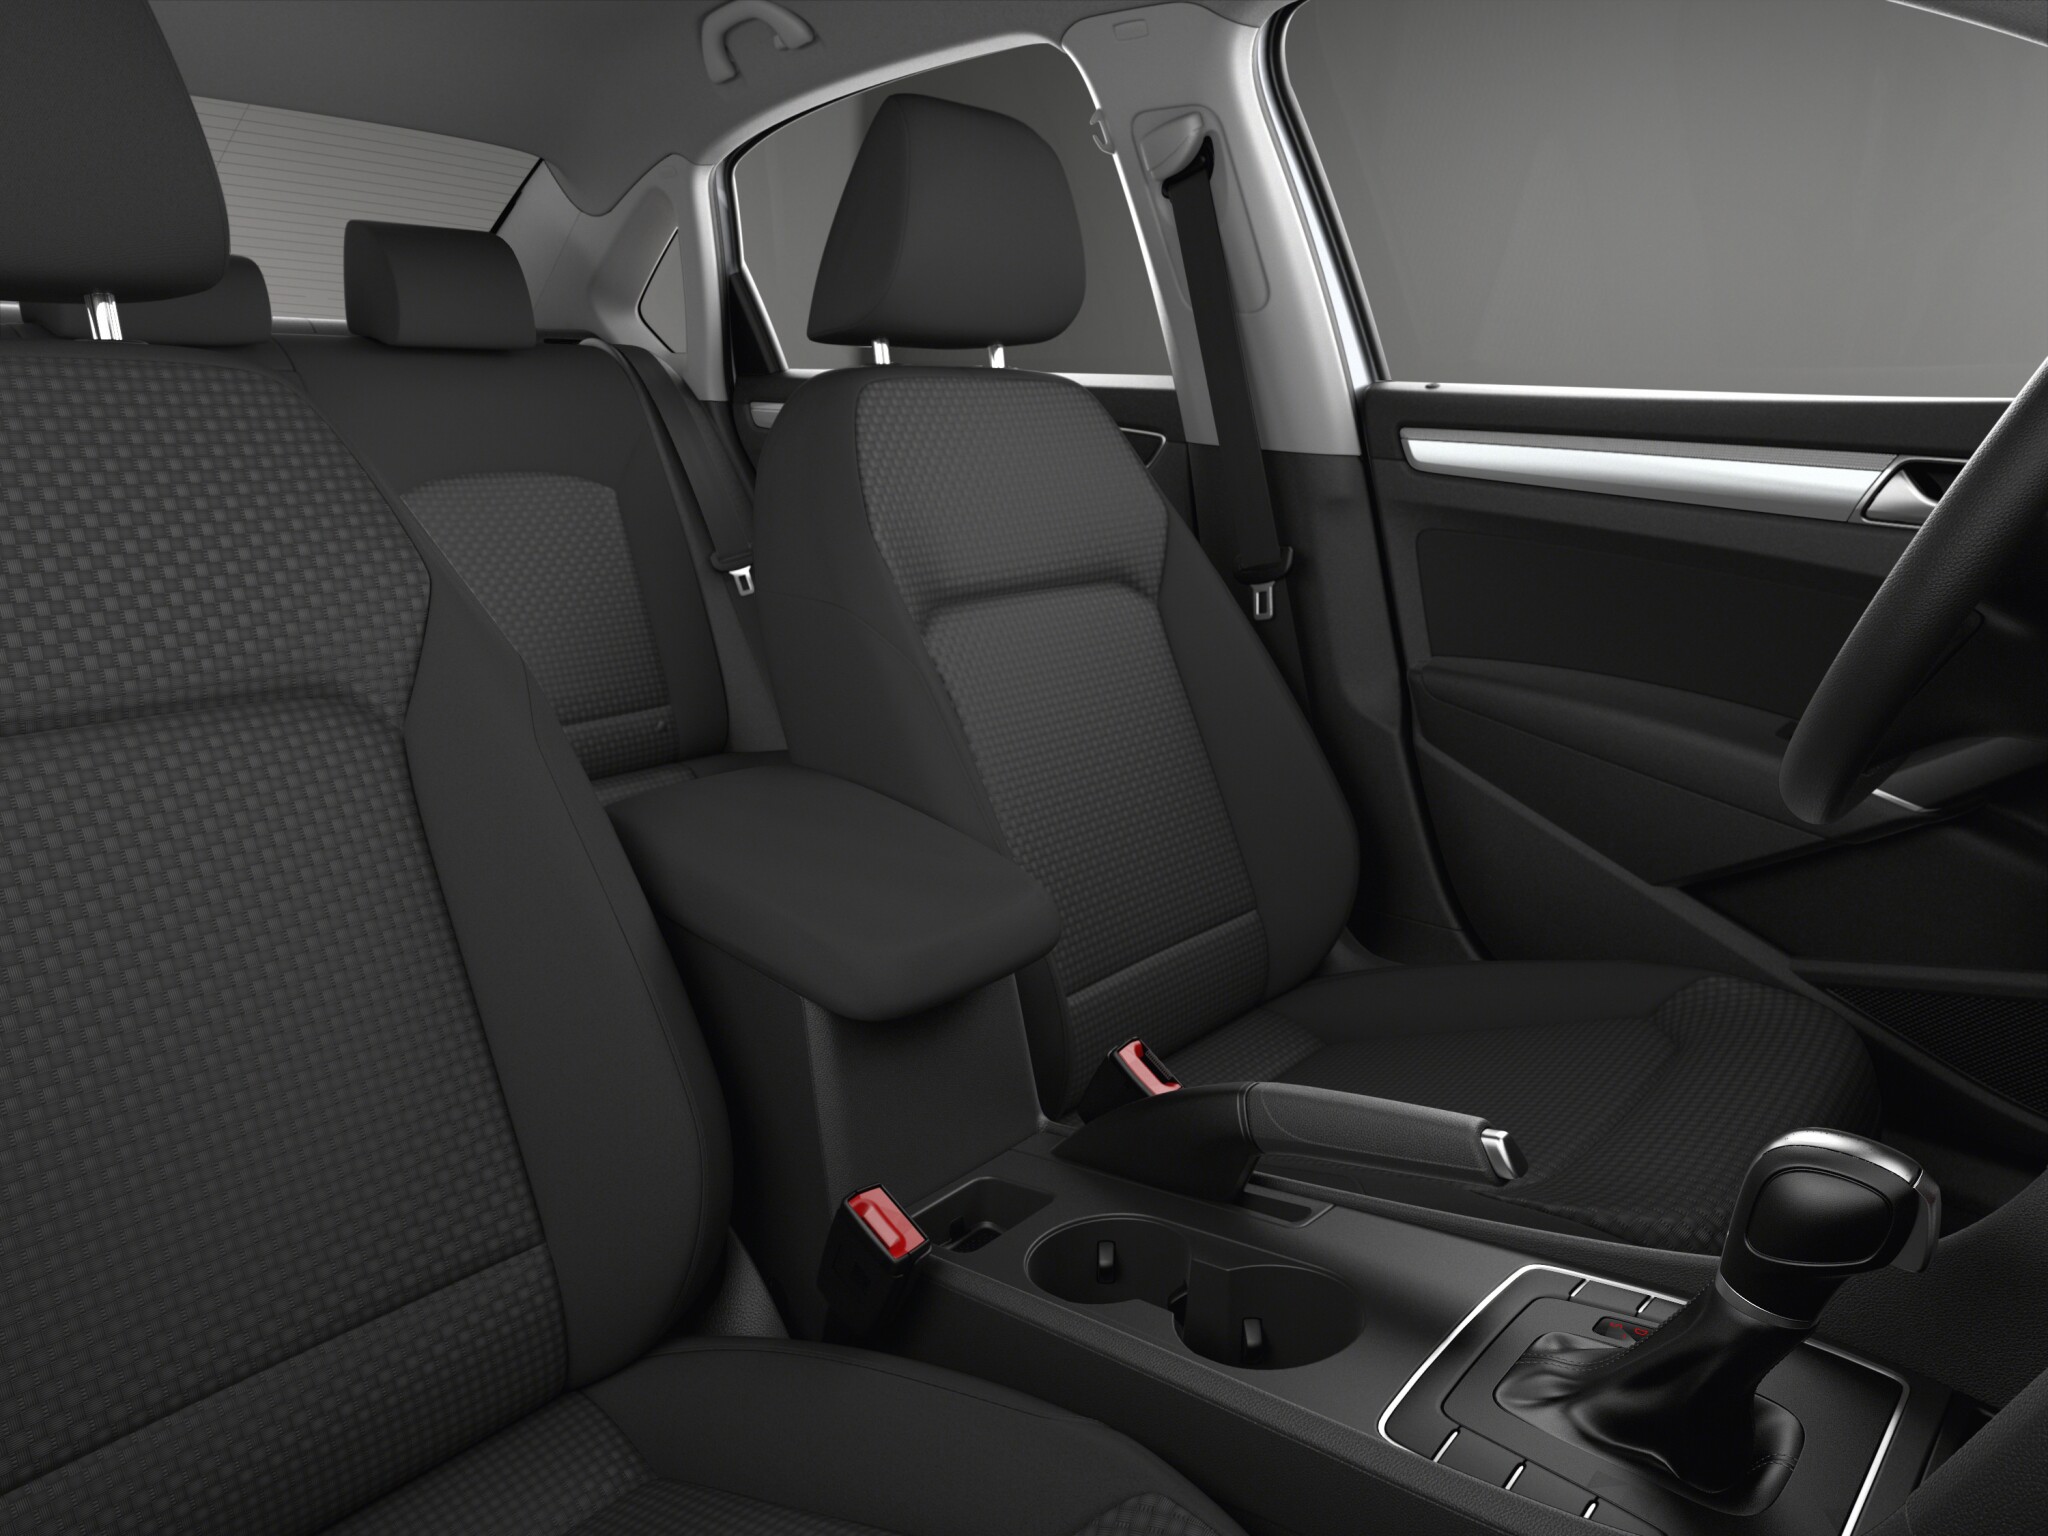 Volkswagen Passat 1.8T SE W/Technology interior front seat view